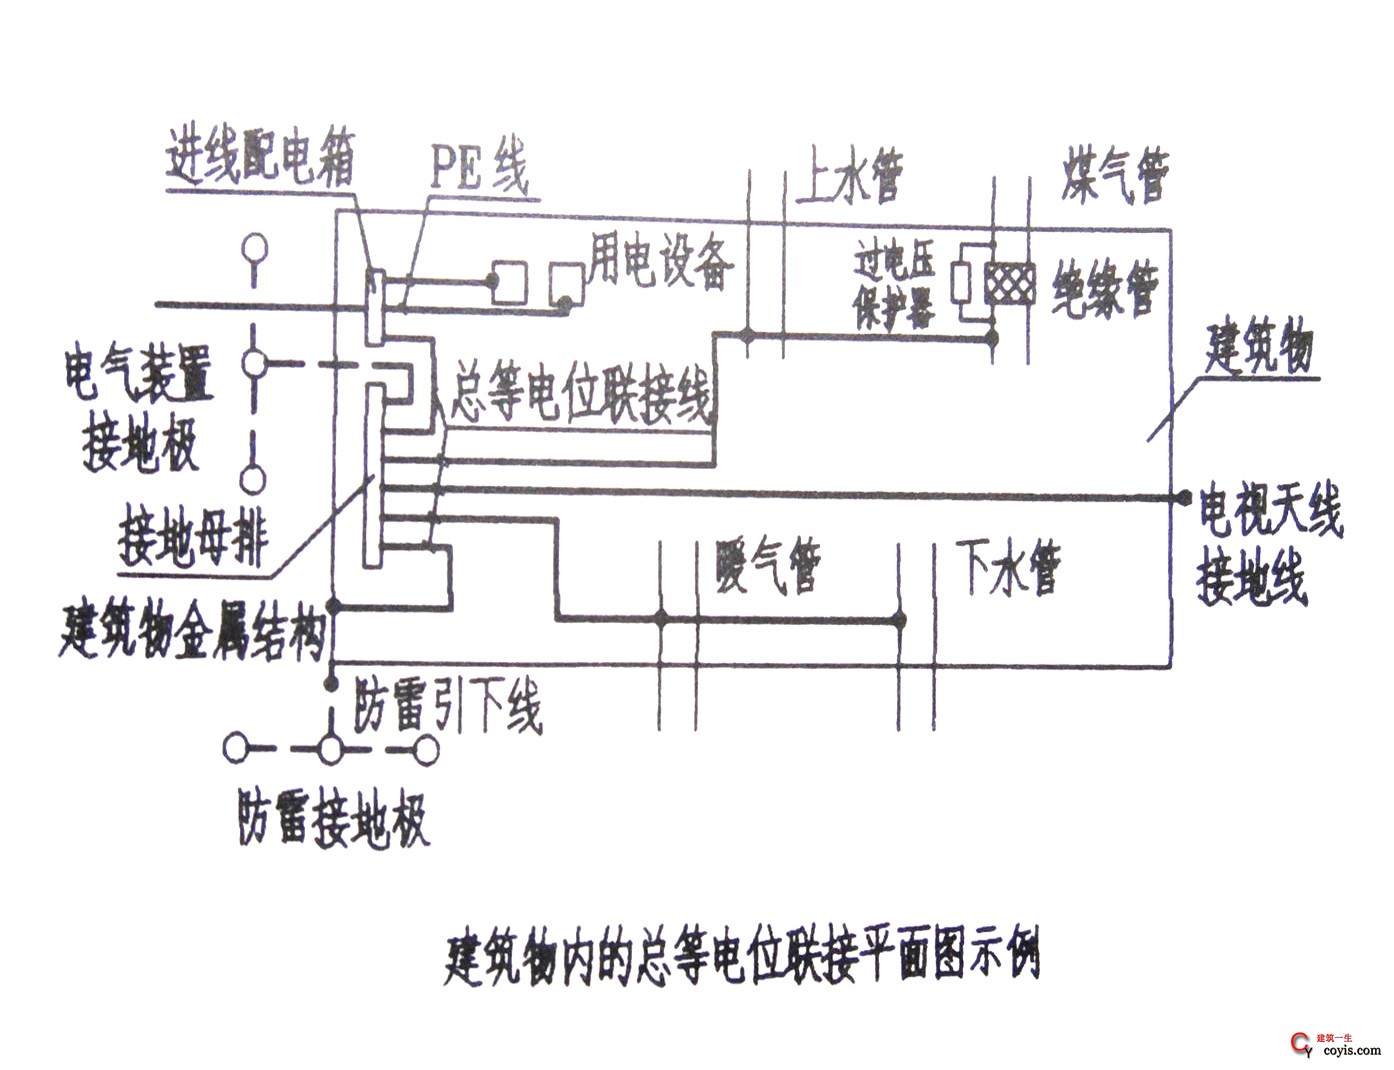 建筑物内的总等电位联结平面图示例